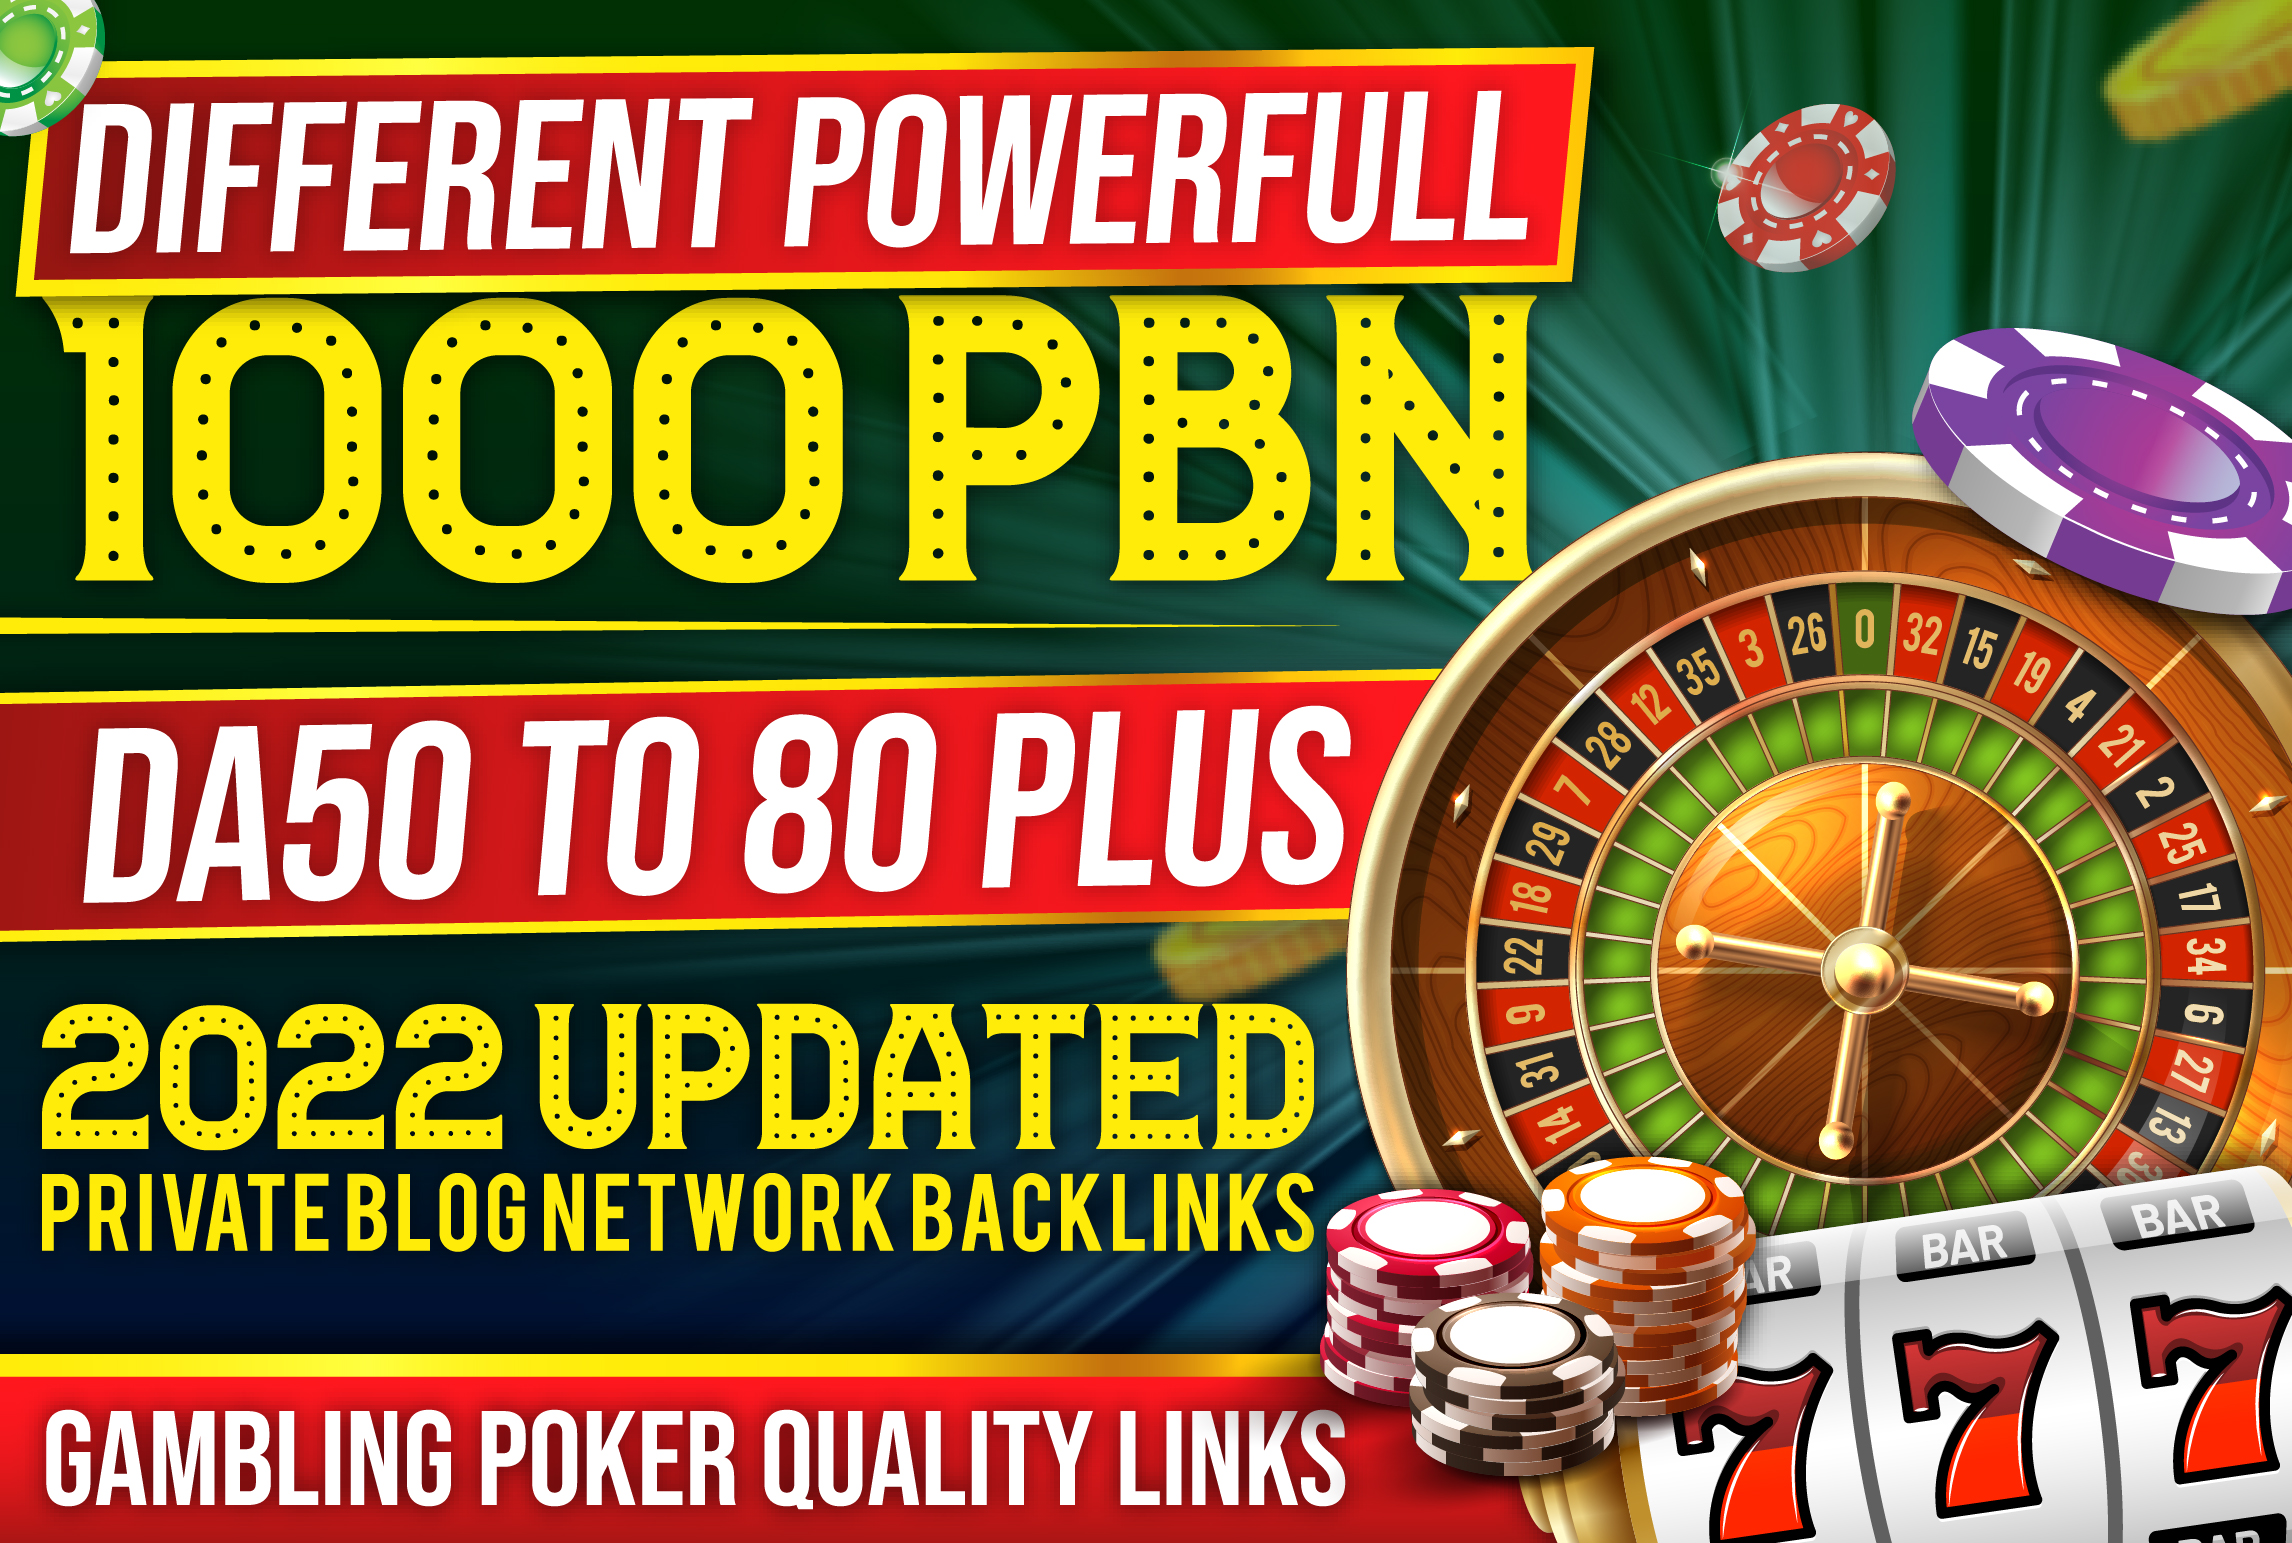 Different PowerFull 1000 PBN DA50 To 80 Plus 2022 Updated Casino Gambling Poker Judi quality Links